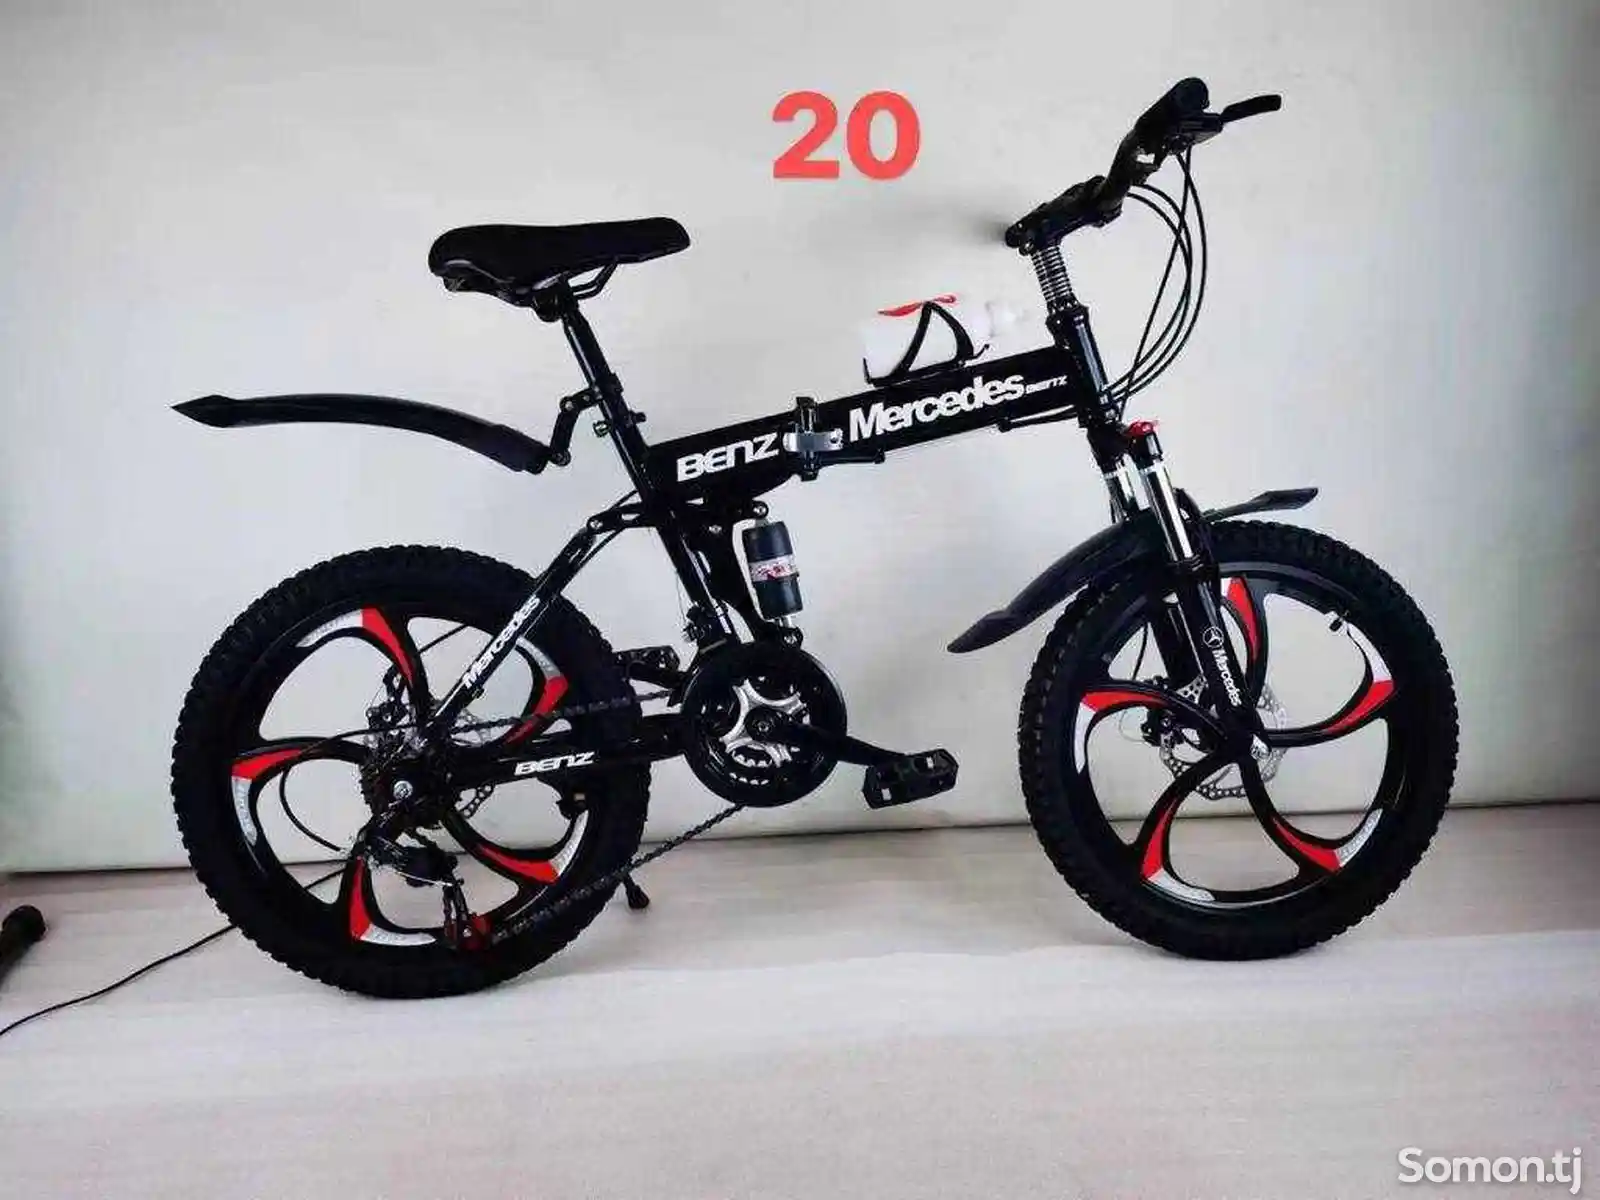 Велосипед 20LN-5